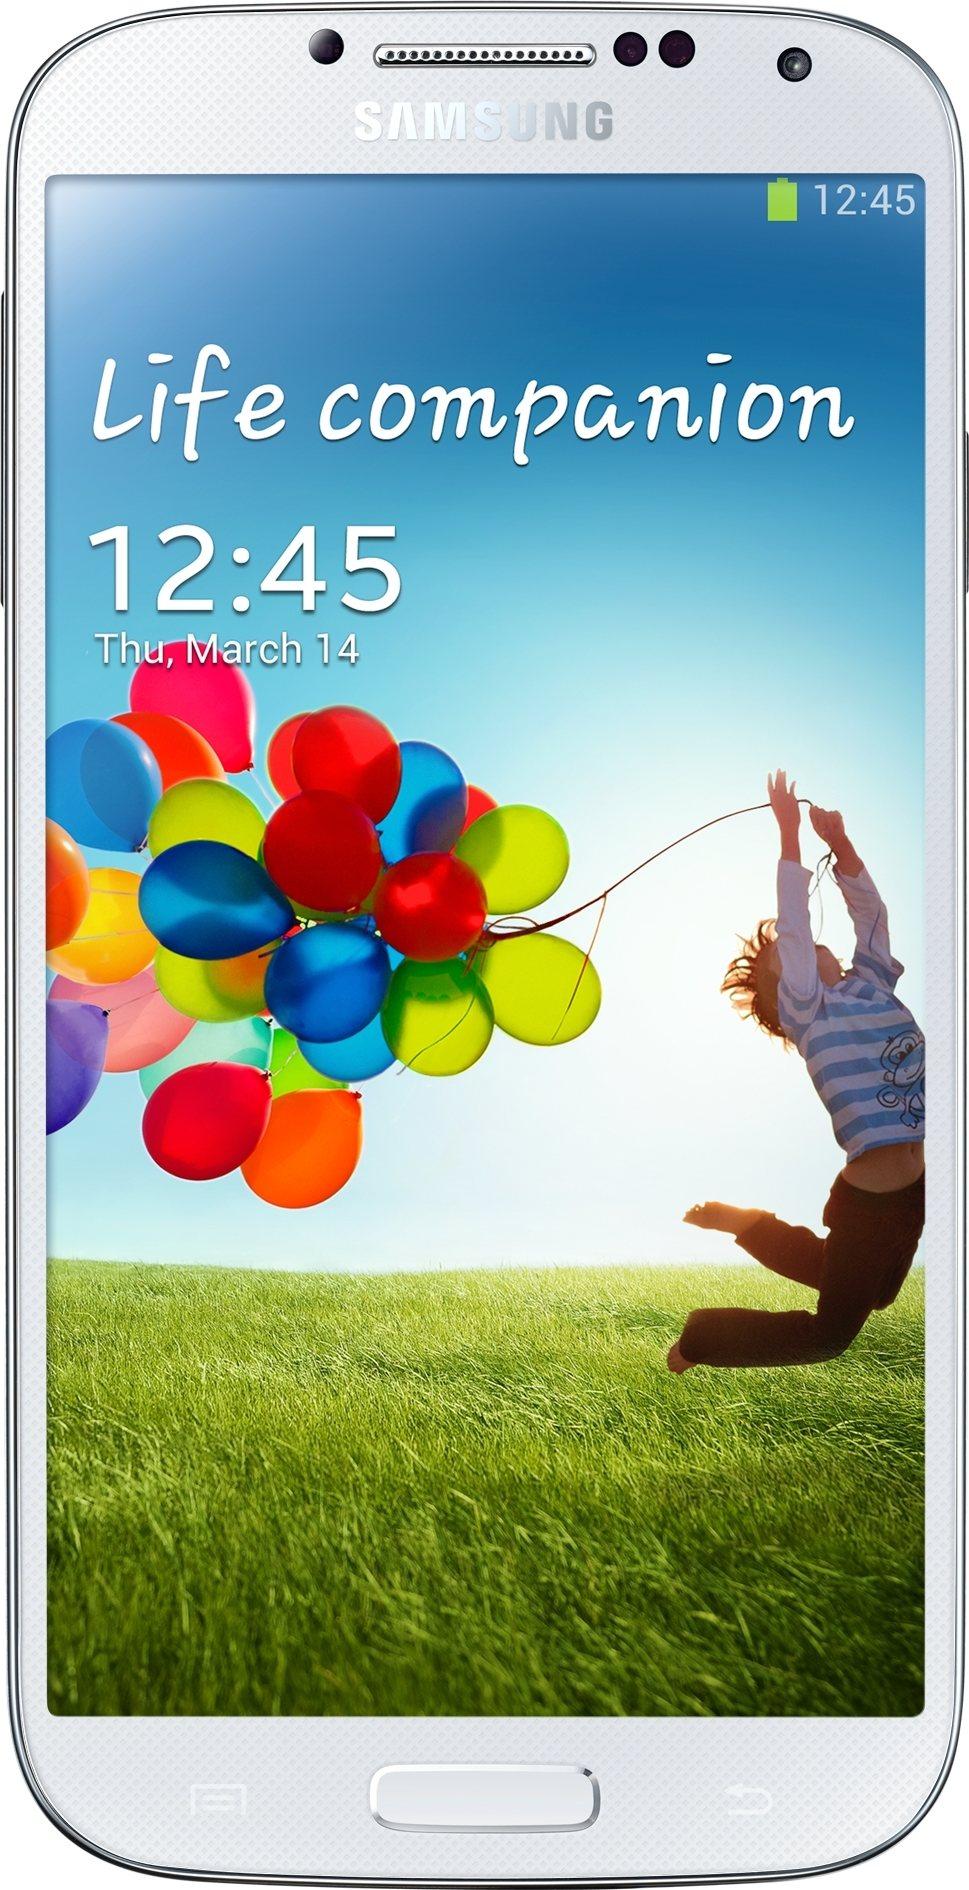 Galaxy S 4 (Exynos Octa) GT-I9500